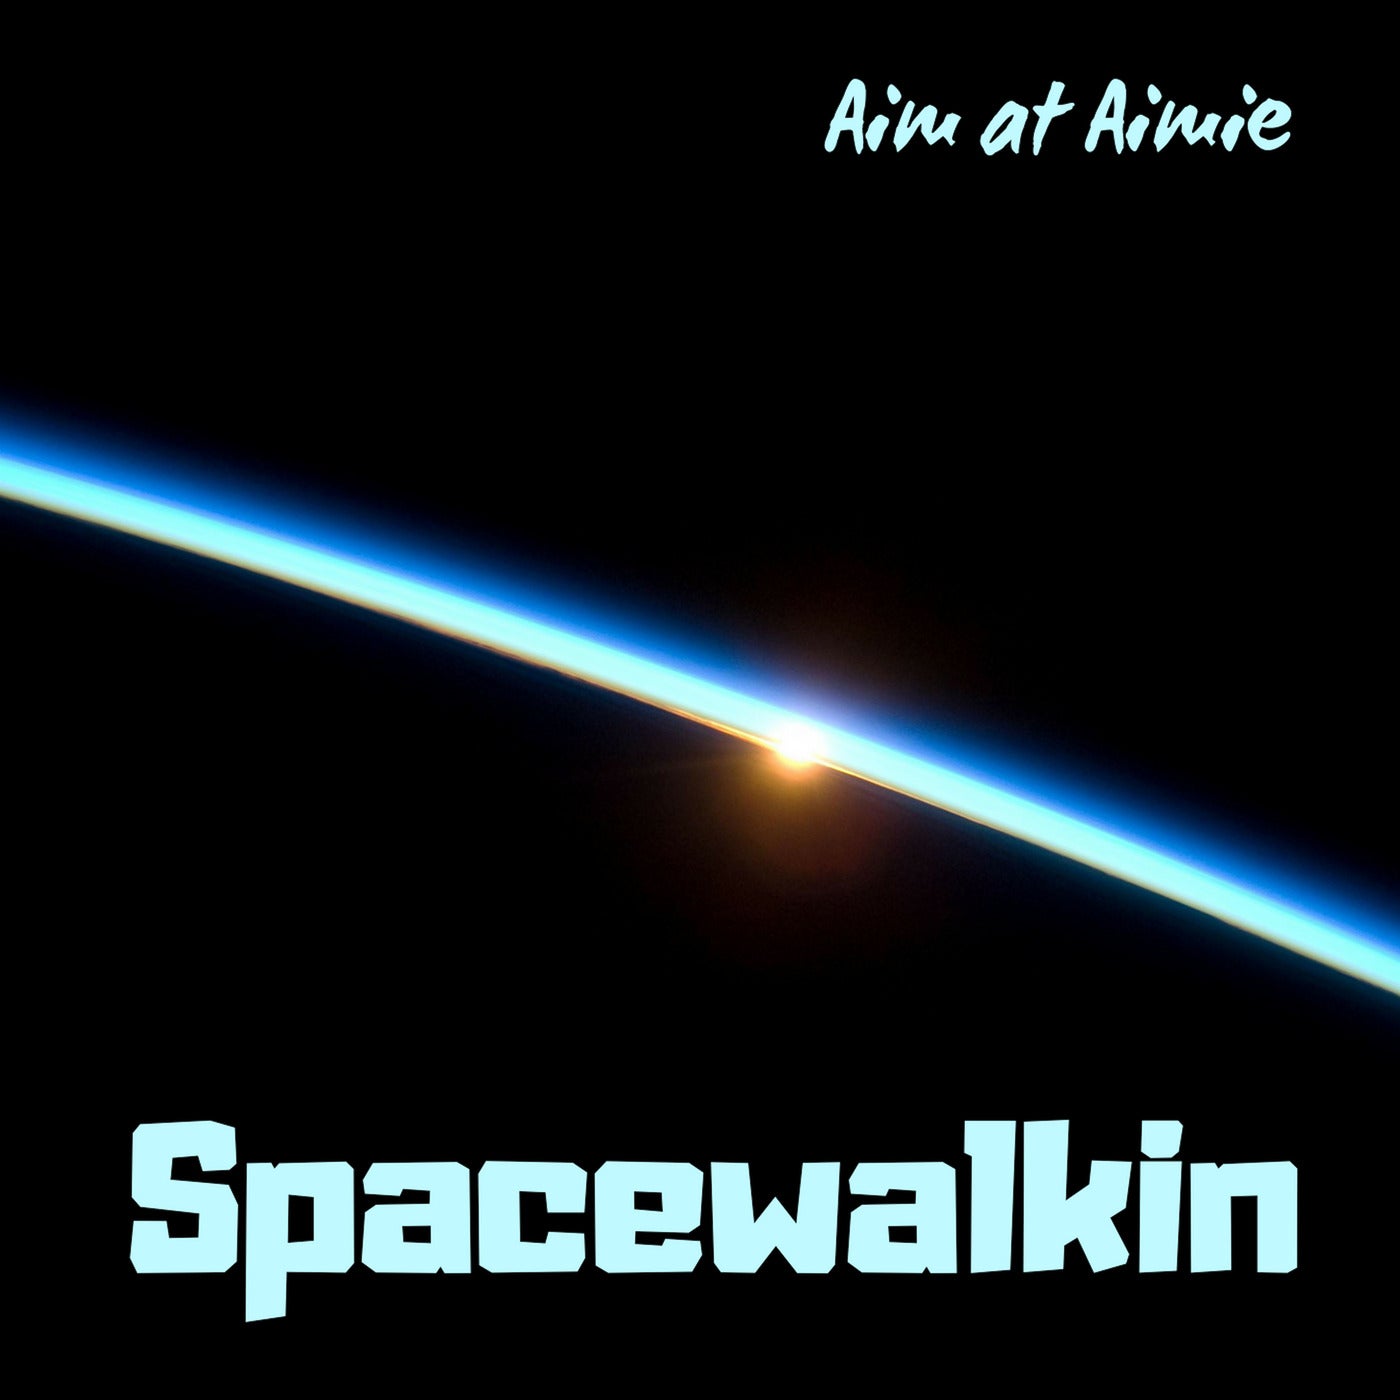 Spacewalkin